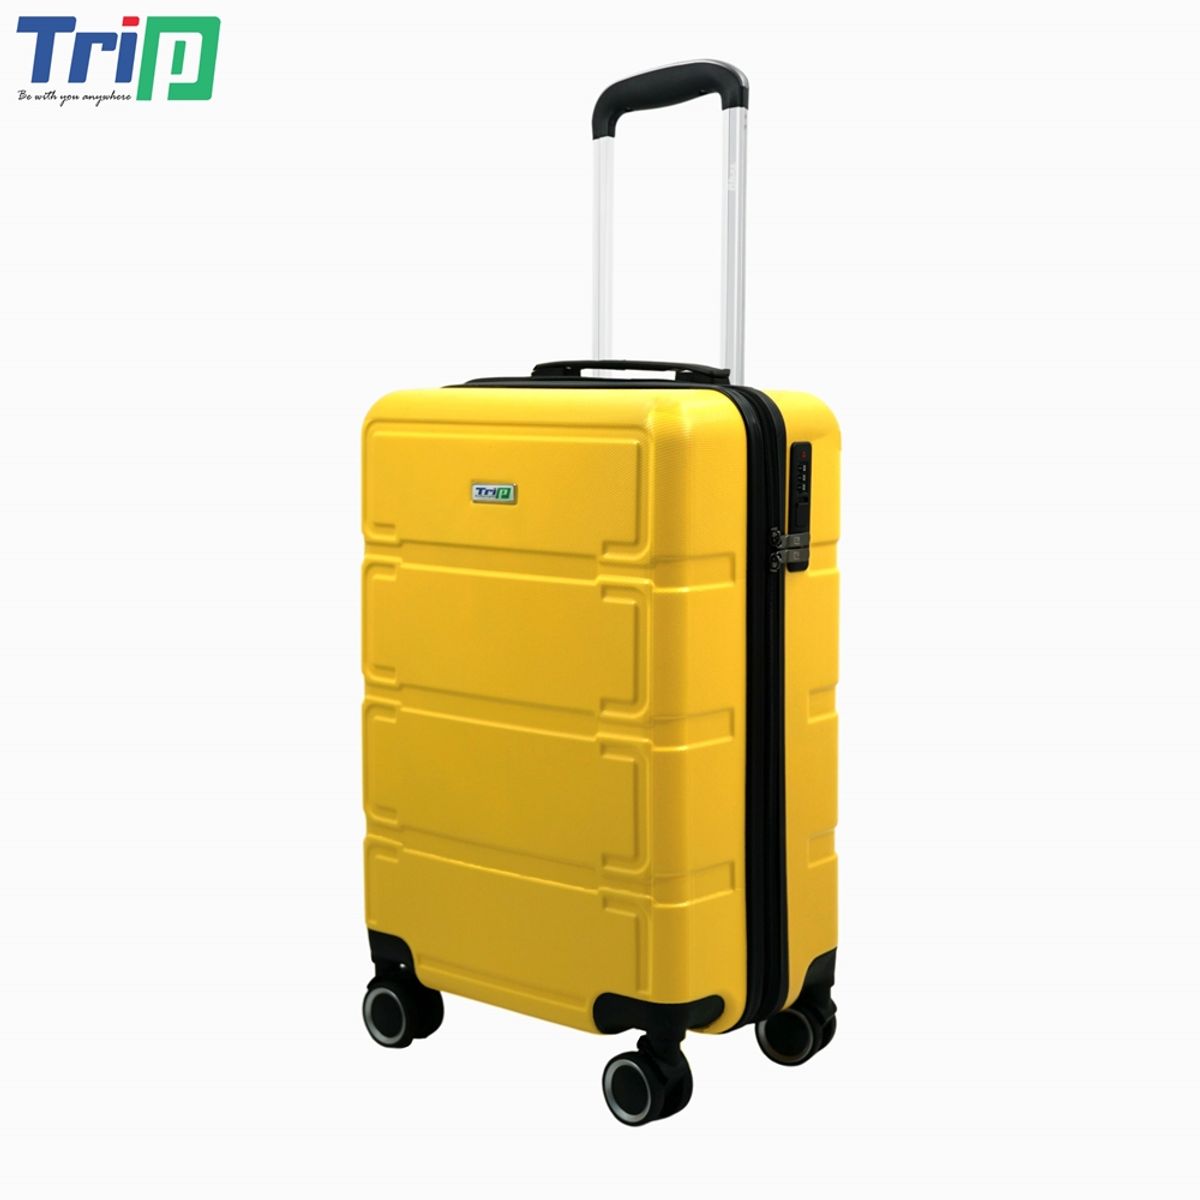 vali nhựa trip p806 size 24 inch, có khóa bảo mật, bảo hành 5 năm - freeship 7